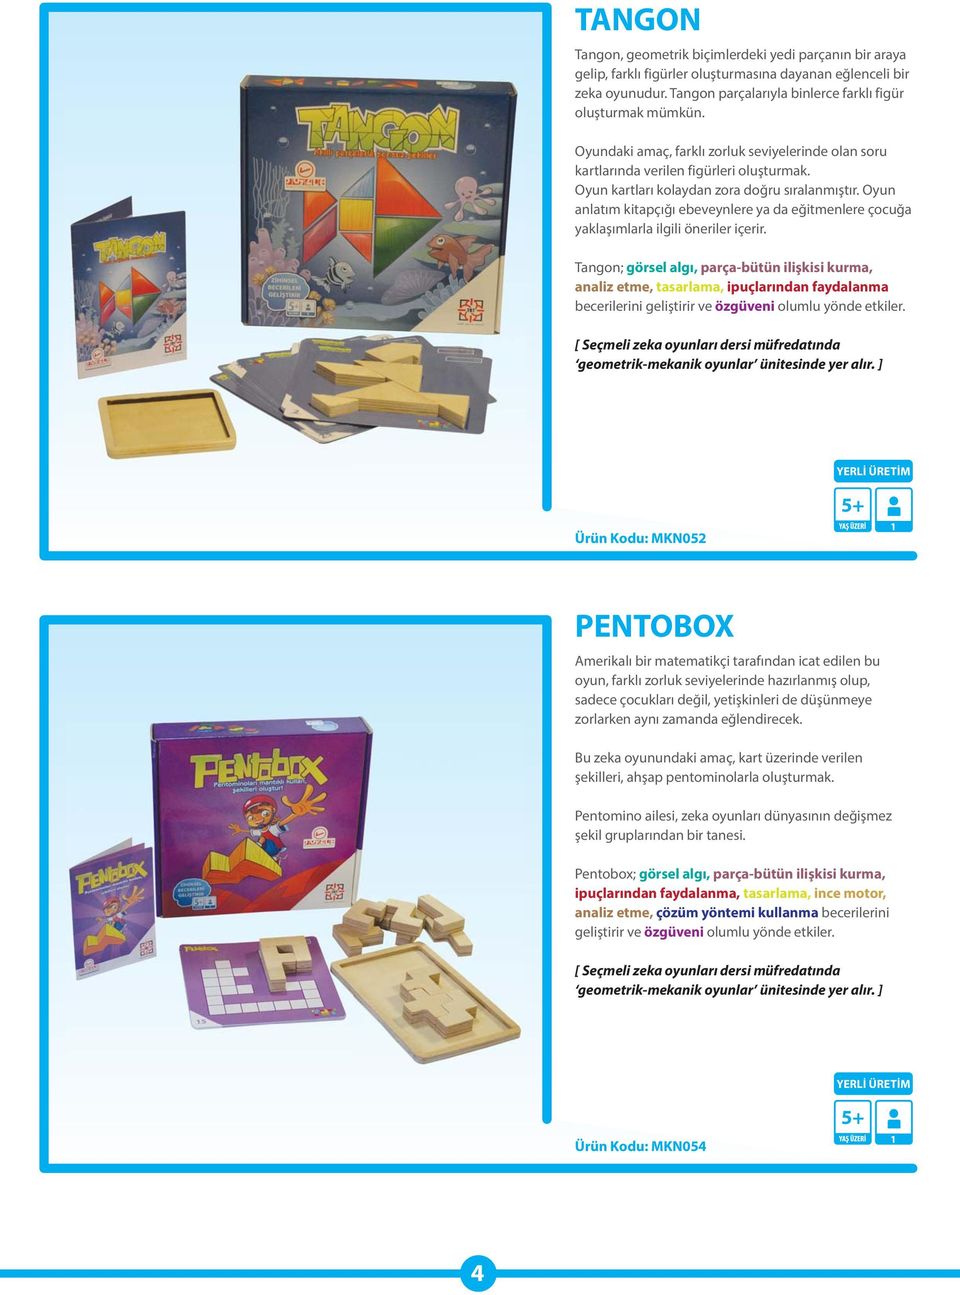 Oyun anlatım kitapçığı ebeveynlere ya da eğitmenlere çocuğa yaklaşımlarla ilgili öneriler içerir.